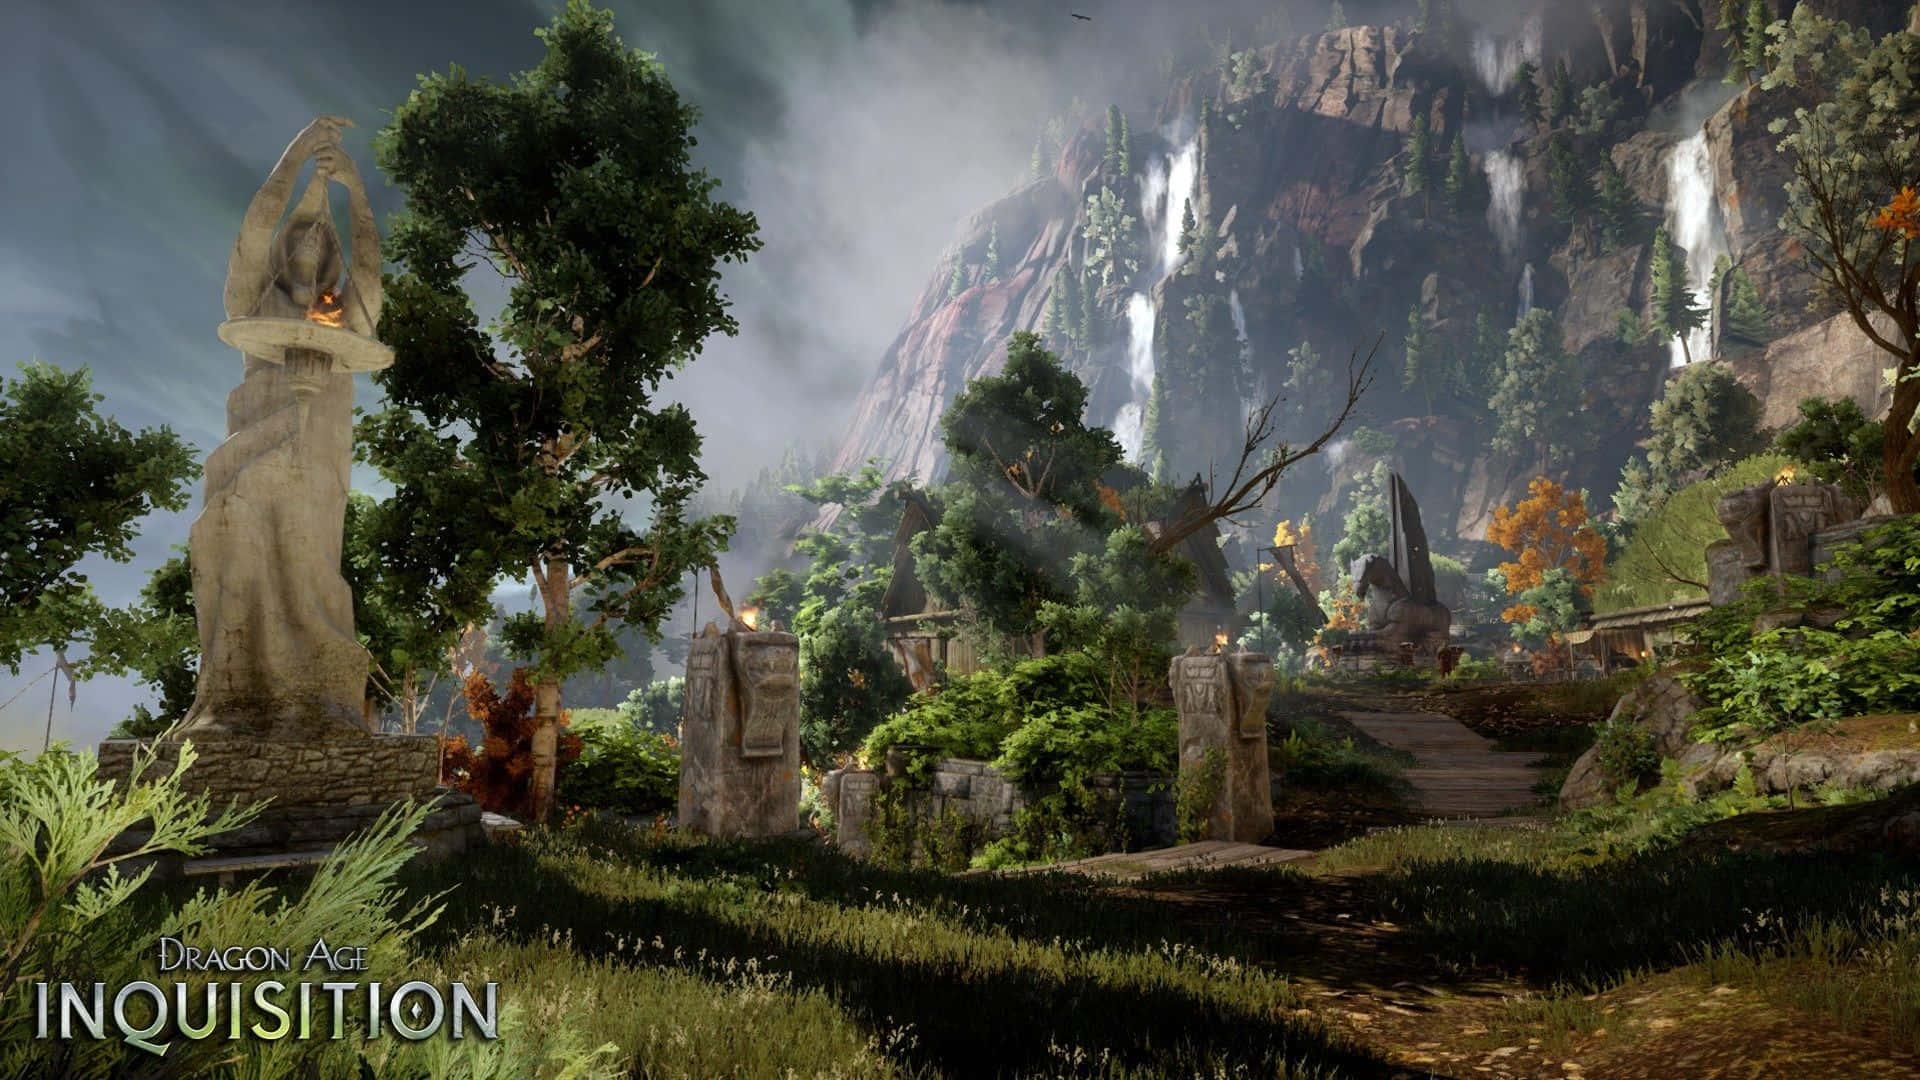 Explore the Fantasy World of Dragon Age Inquisition